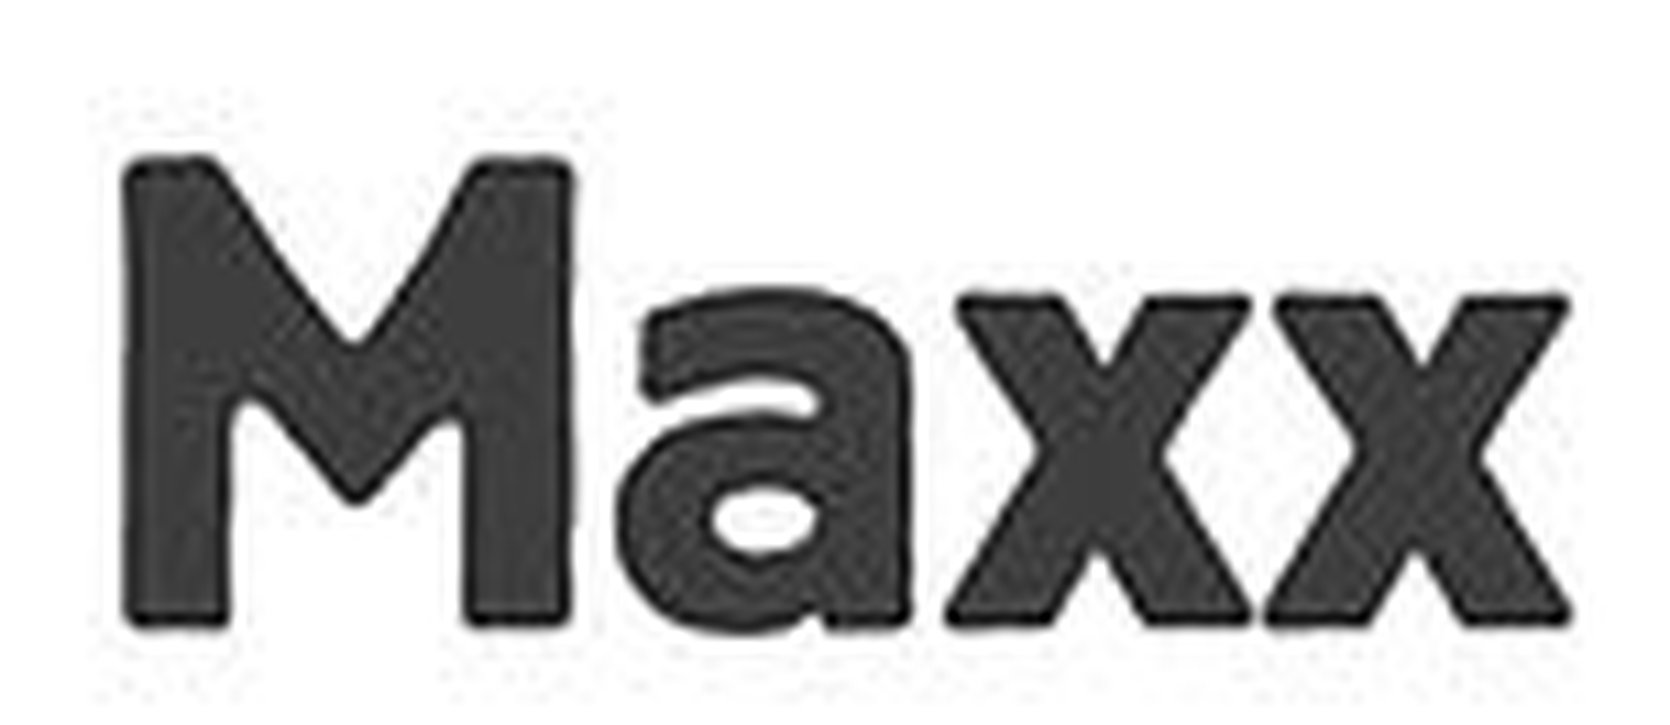 Nieuwe app Maxx motiveert mensen minder alcohol te drinken